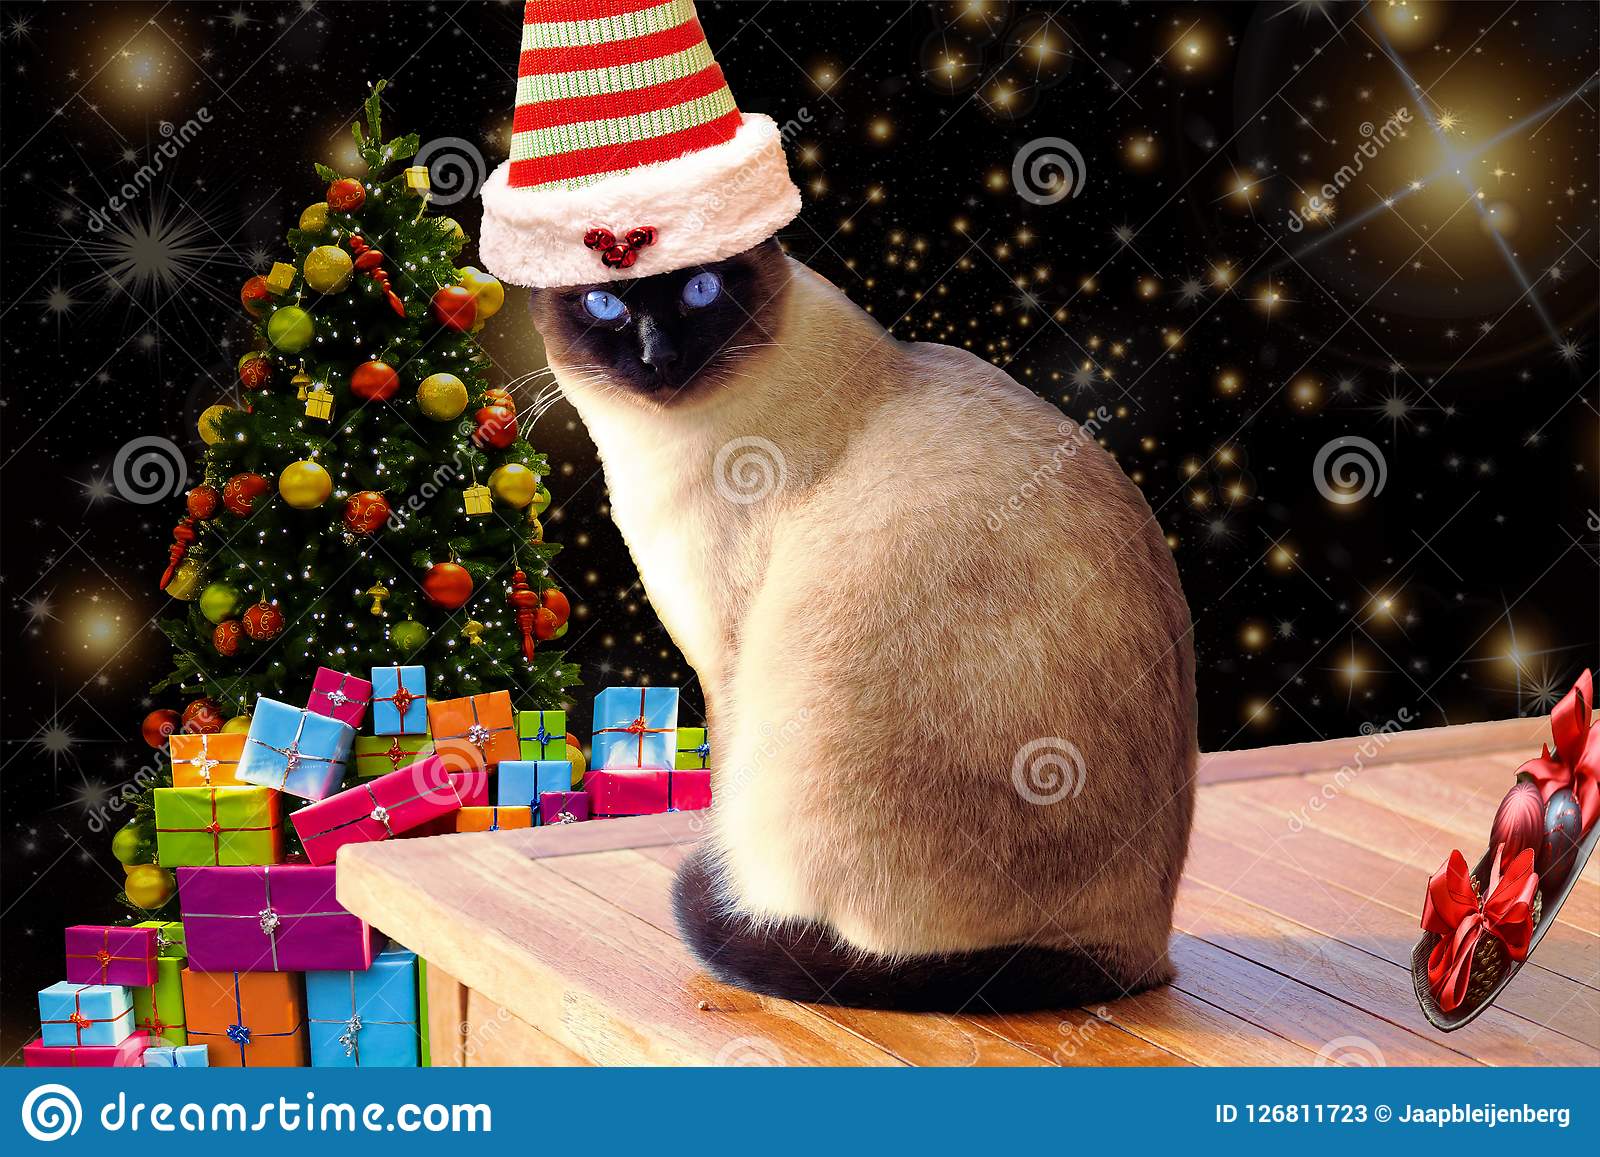 рождество-смешное-и-милый-кот-нося-striped-шляпу-эльфа-с-предпосылкой-126811723.jpg